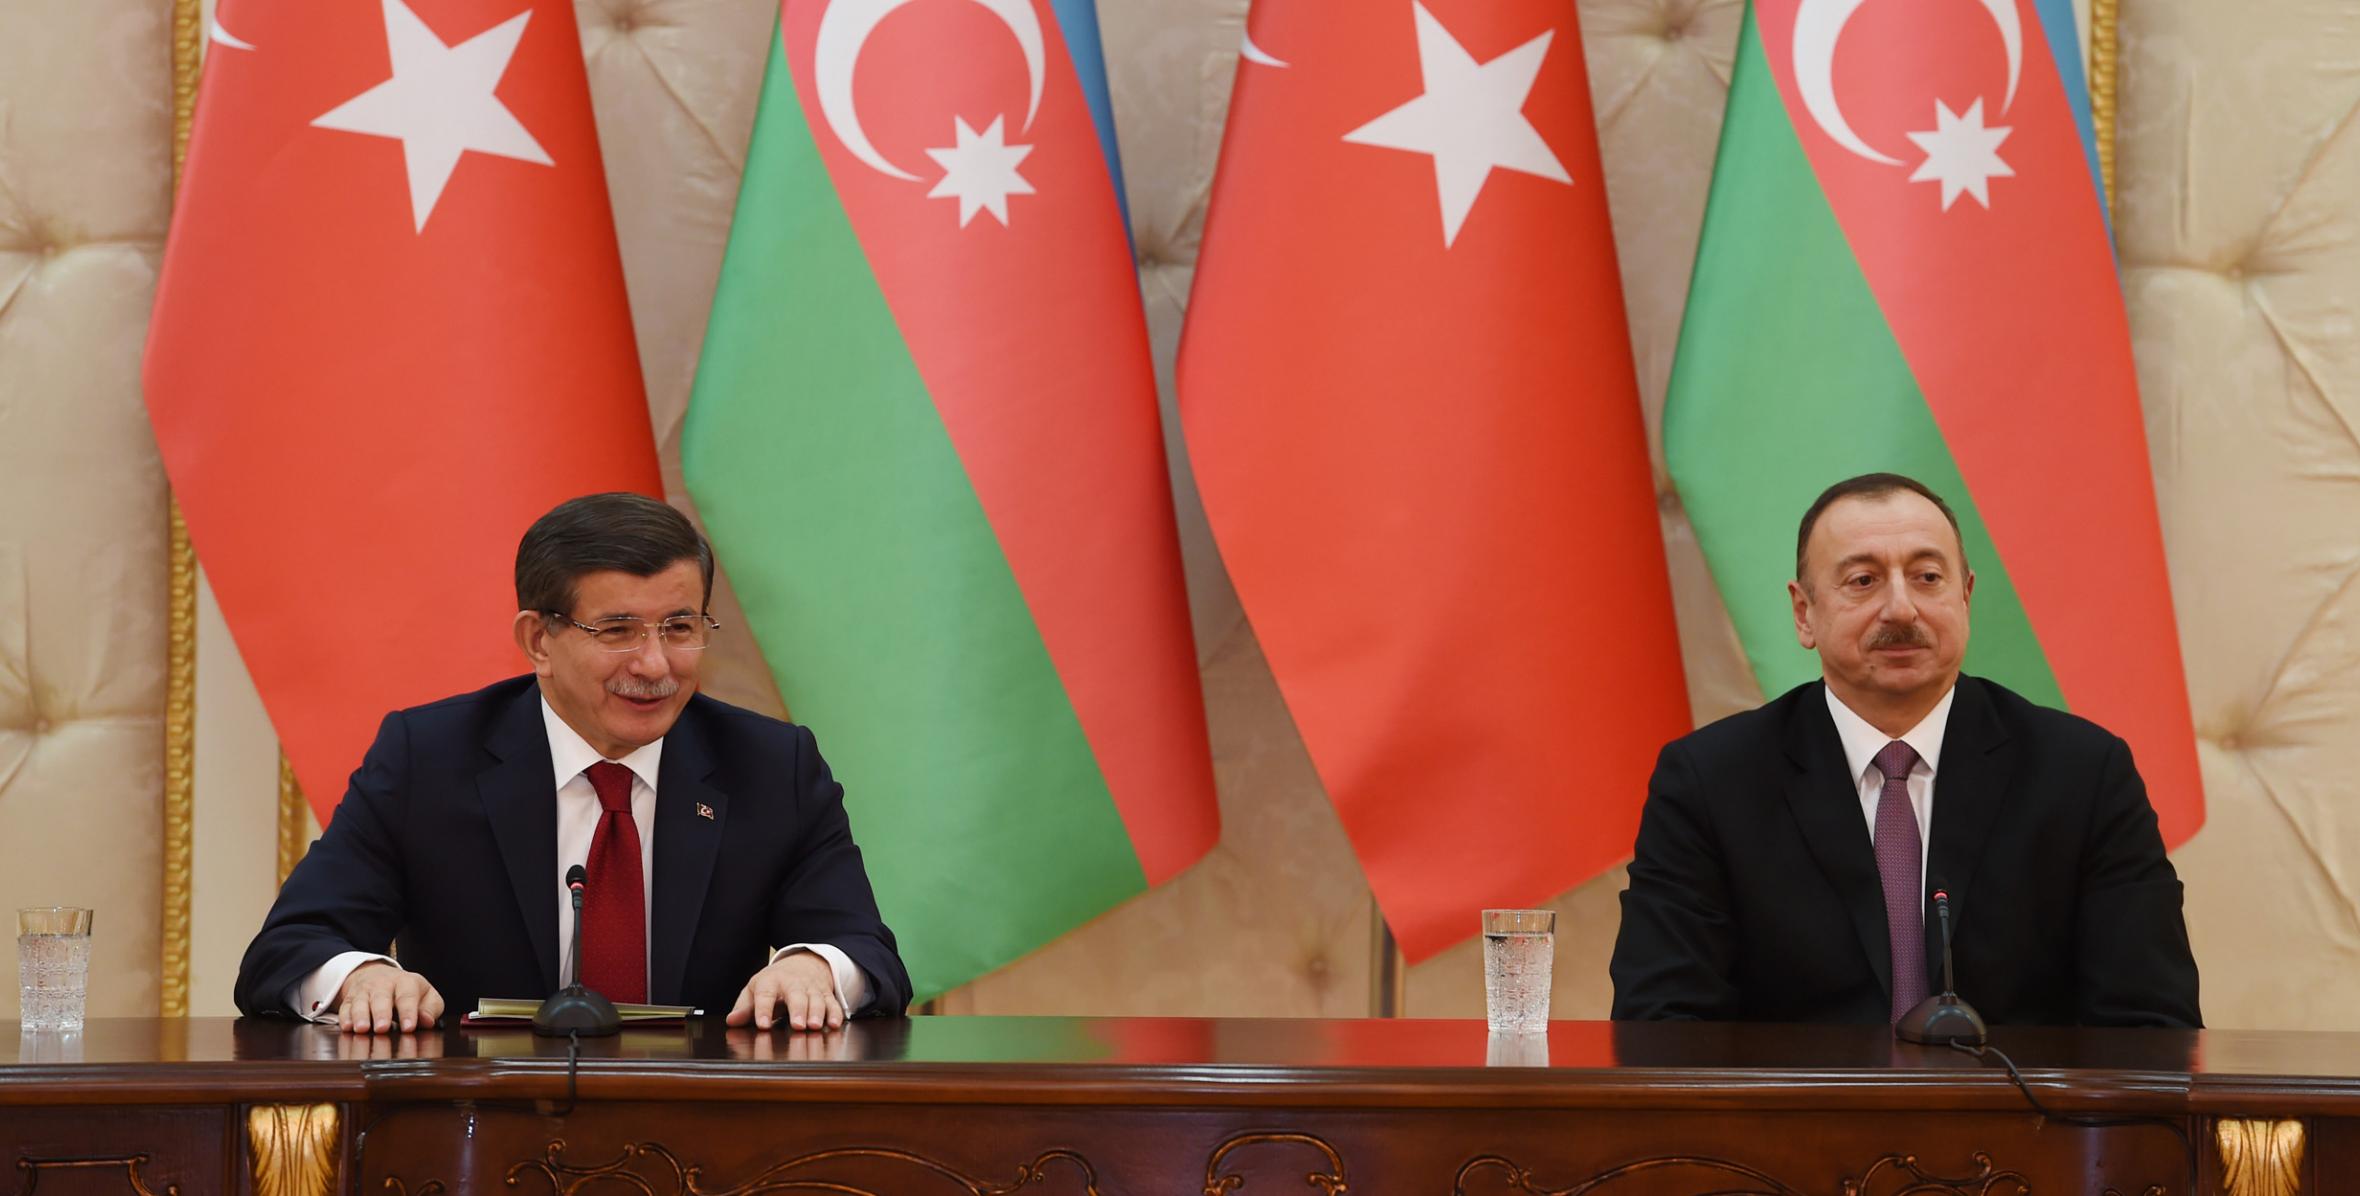 Ильхам Алиев и премьер-министр Ахмет Давутоглу выступили с заявлениями для печати